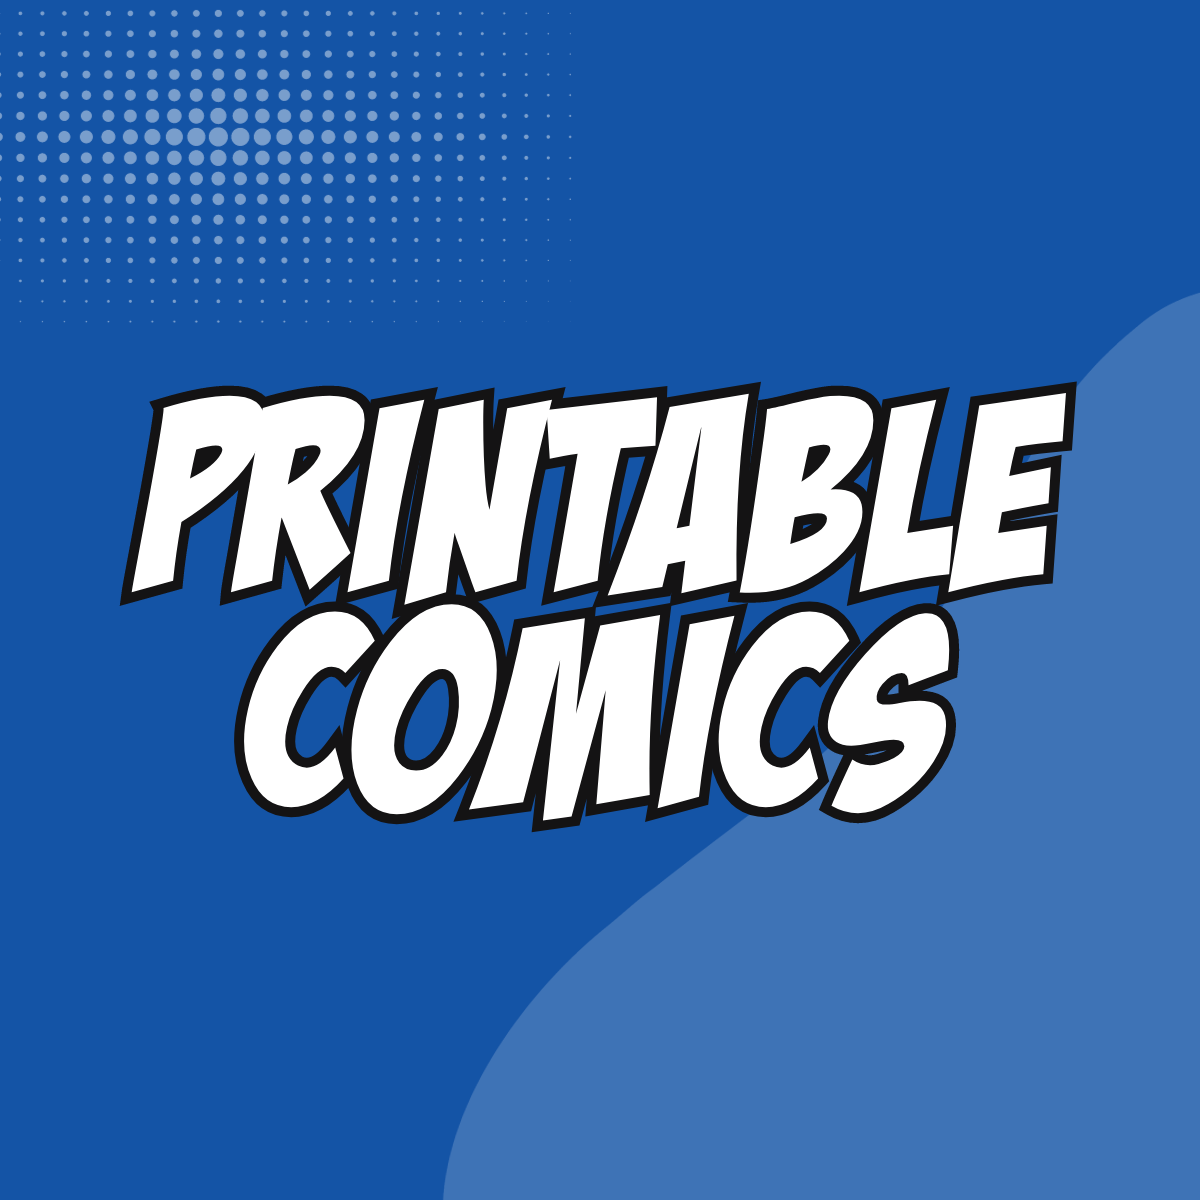 Printable Comics